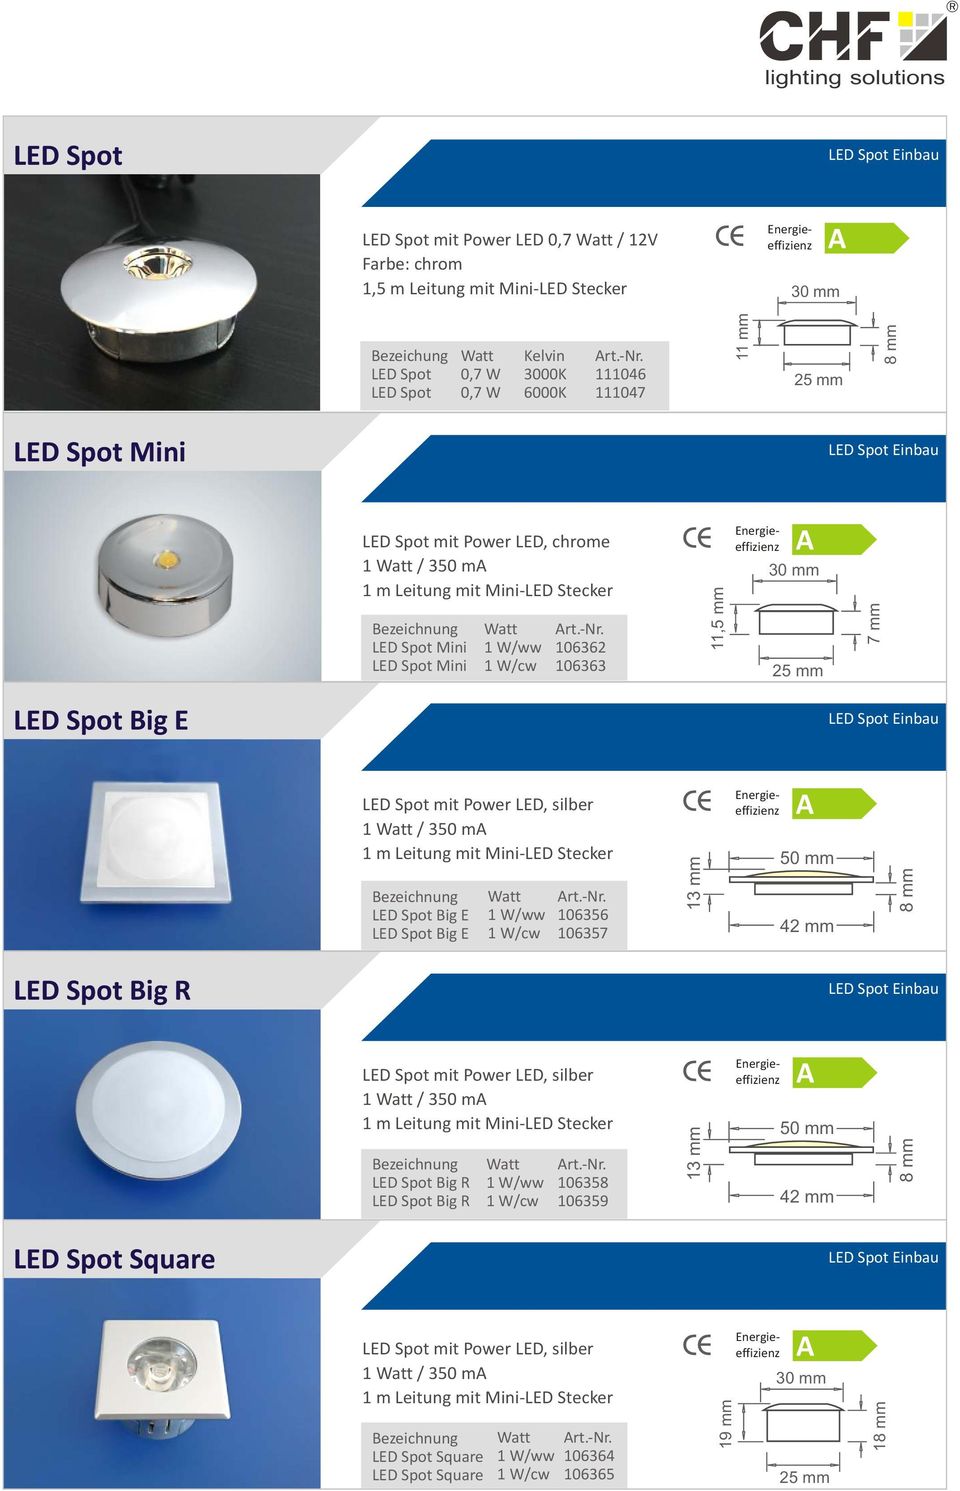 7 mm LED Spot Big E LED Spot Einbau LED Spot mit Power LED, silber 1 / 350 m 1 m Leitung mit Mini-LED Stecker LED Spot Big E LED Spot Big E 1 W/ww 1 W/cw 106356 106357 13 mm 50 mm 42 mm 8 mm LED Spot